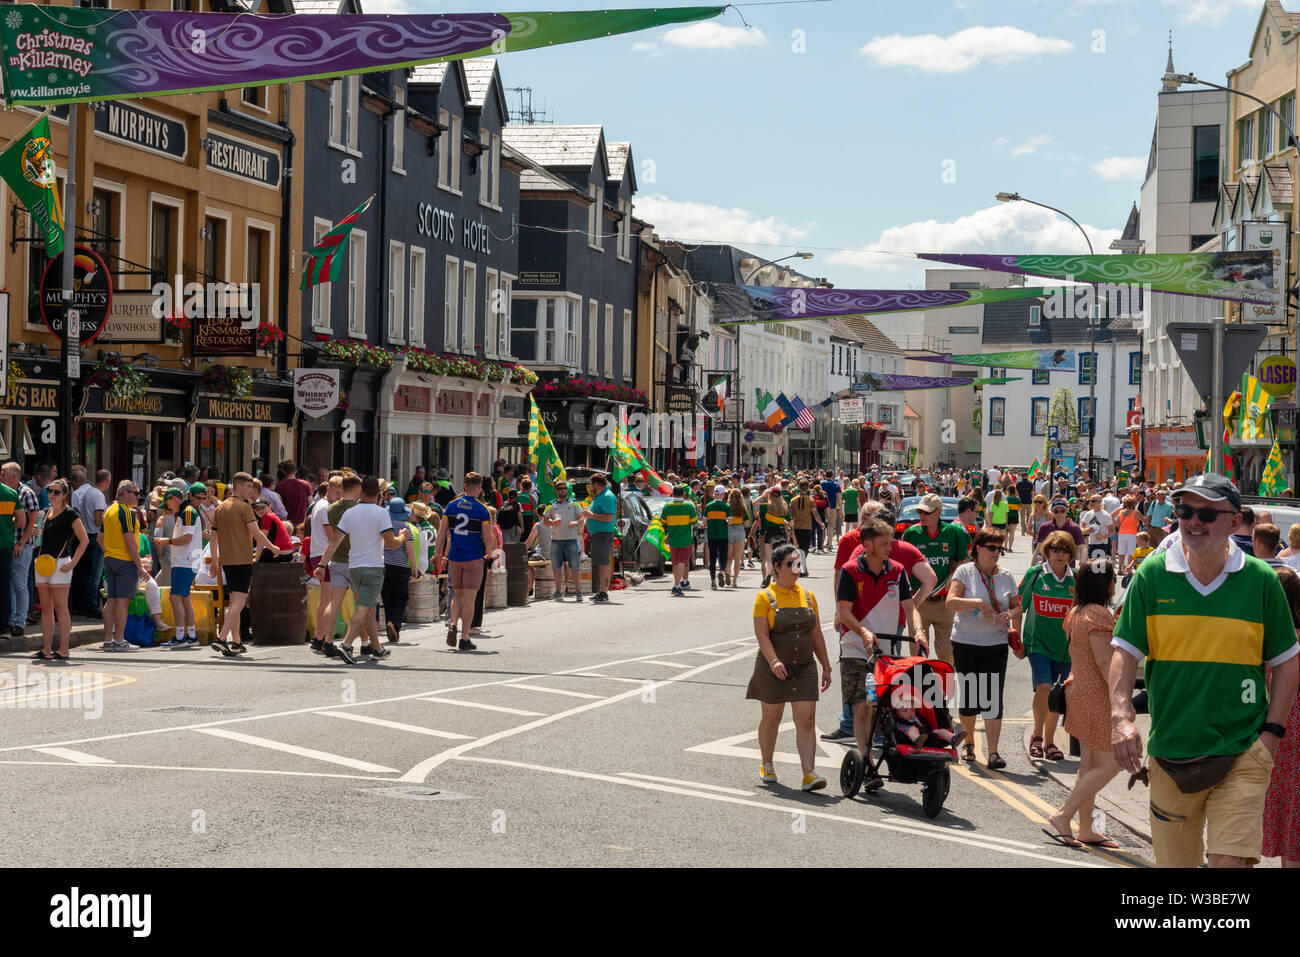 Spieltag in Killarney, County Kerry, Irland. Fans der gälischen Fußballfans auf der College Street vor dem Spiel von Mayo und Kerry im Juli 2019. Stockfoto